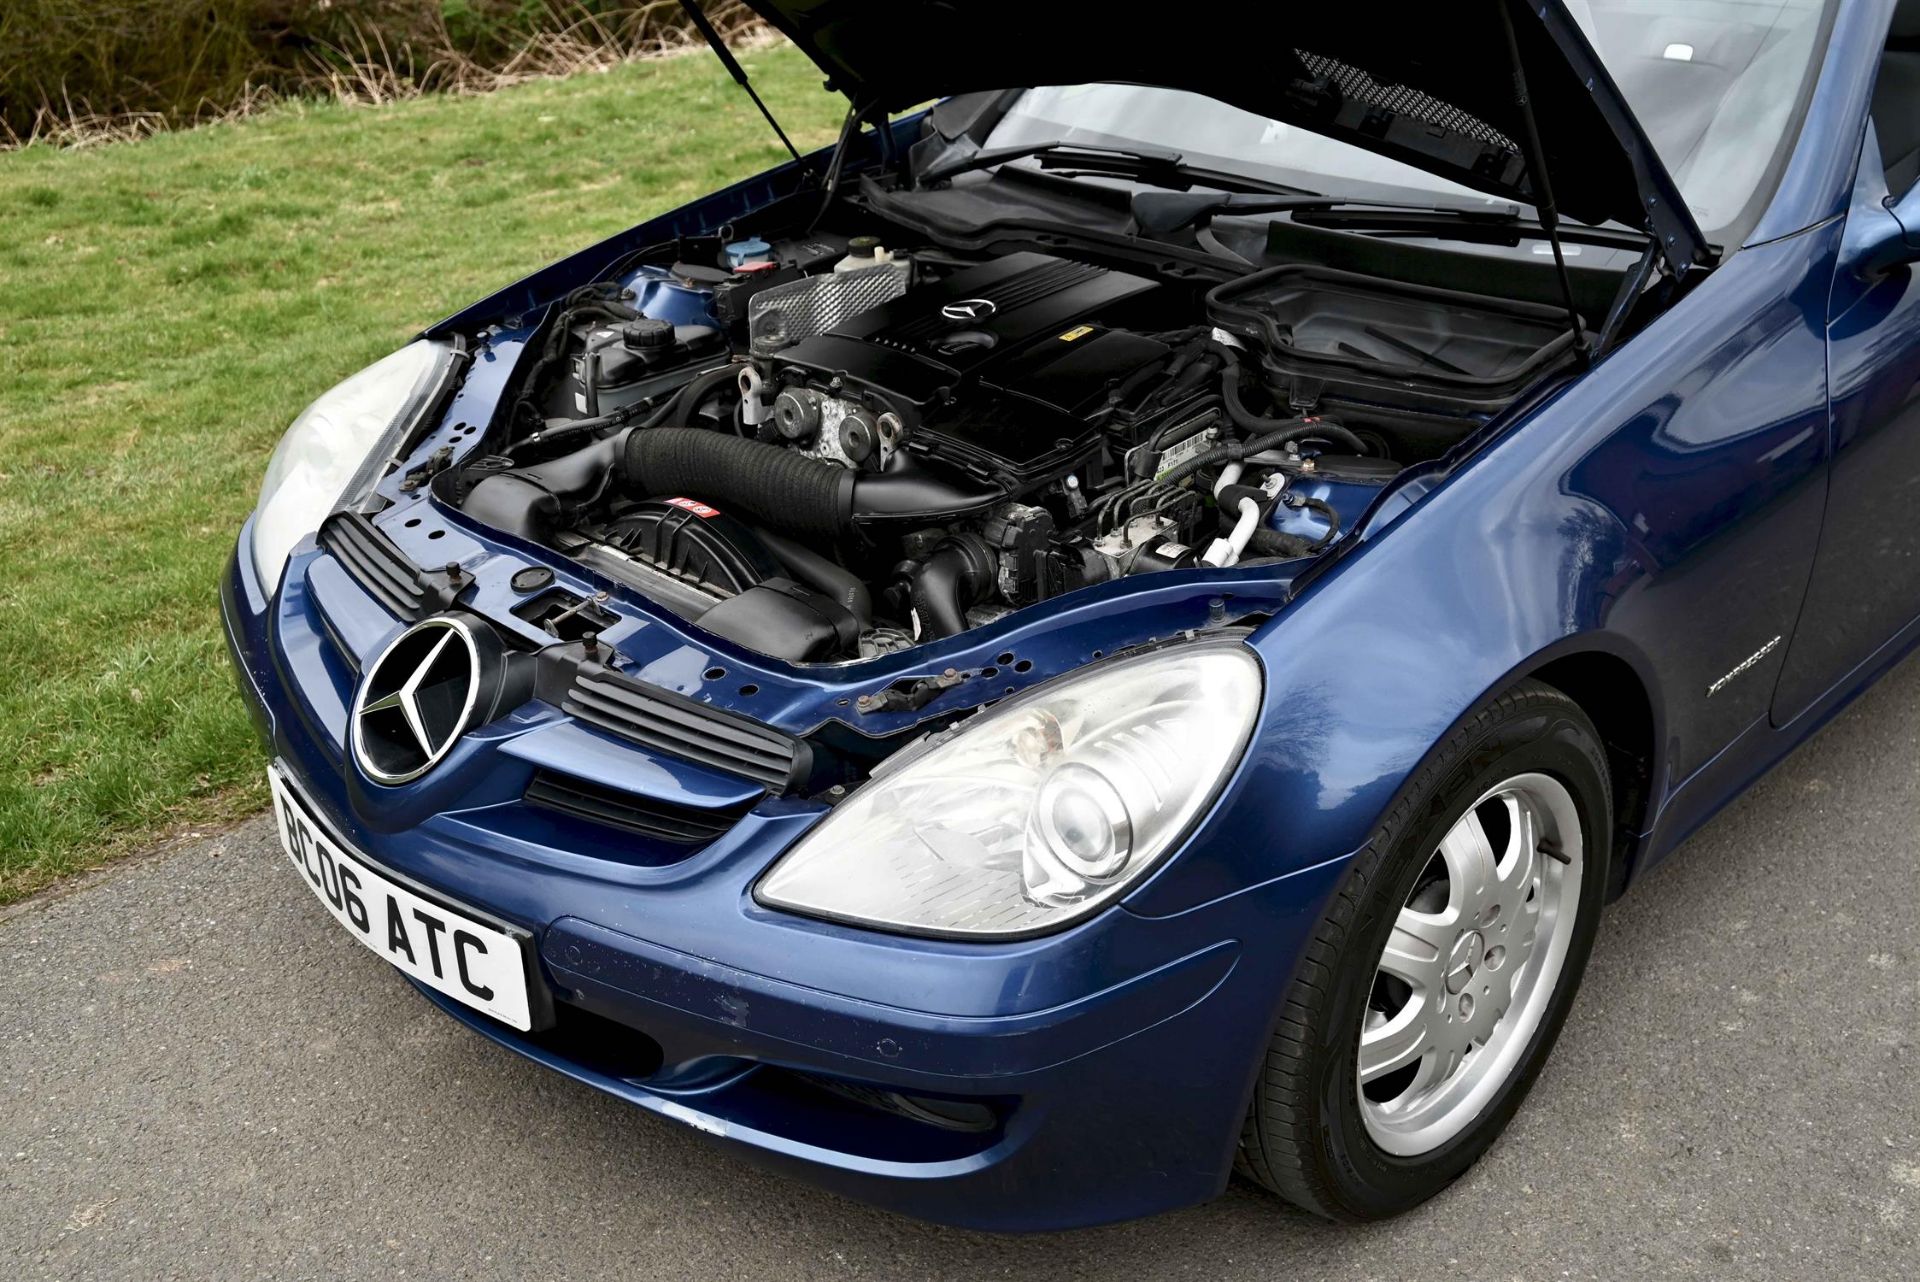 2006 Mercedes Benz SLK 200 Kompressor 1.8 Auto Convertible. Registration number BC06 ATC. - Image 13 of 17